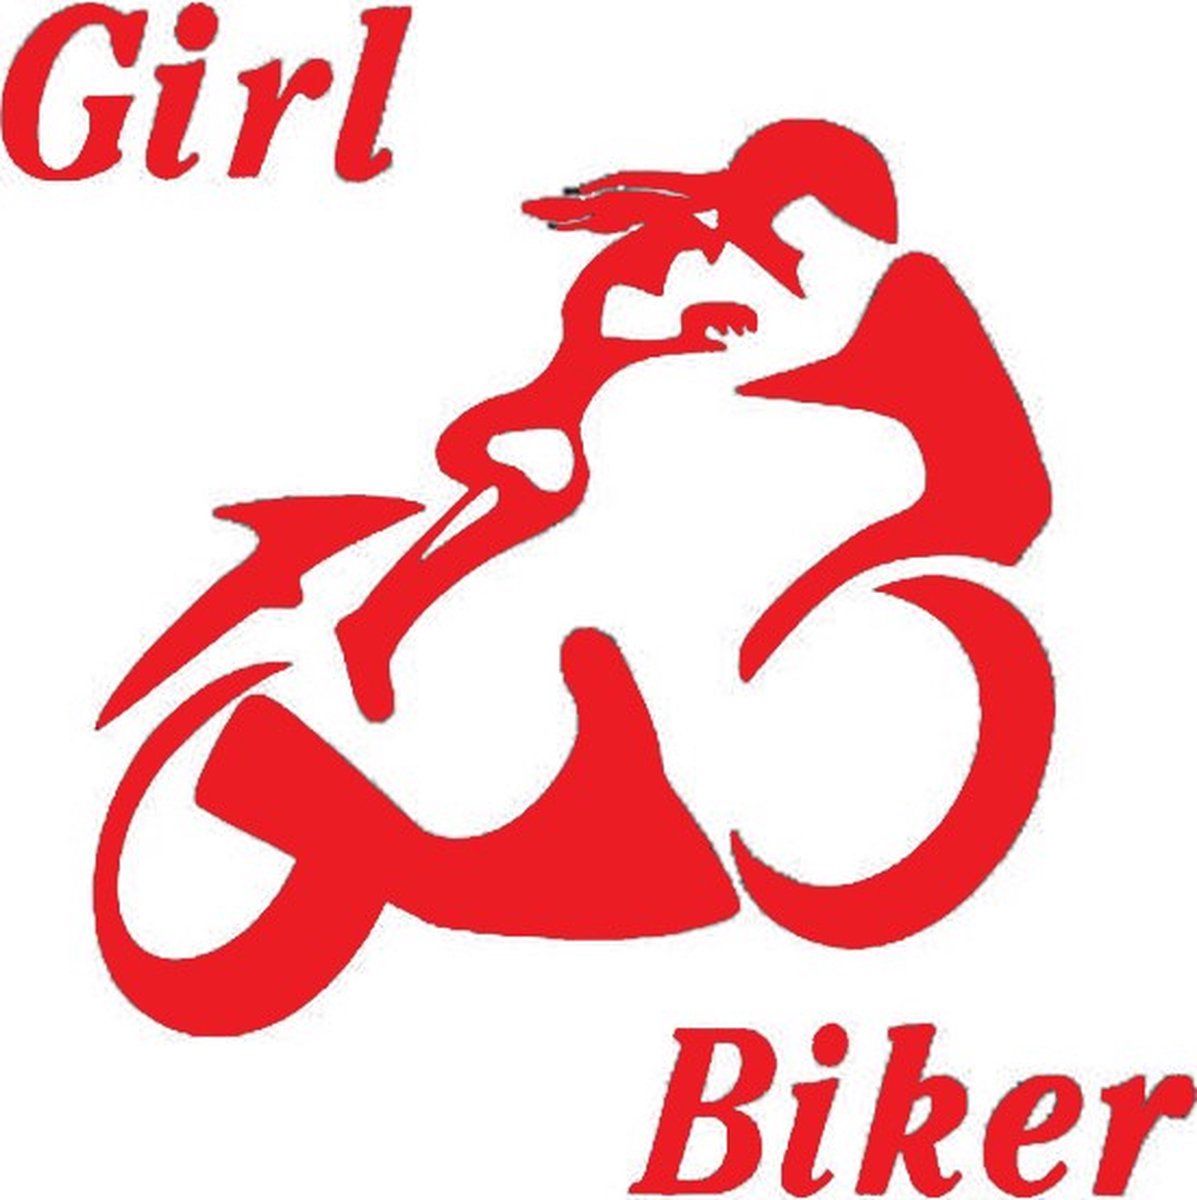 Girl biker sticker voor op de auto - Auto stickers - Auto accessories - Stickers volwassenen - 12 x 12 cm Rood